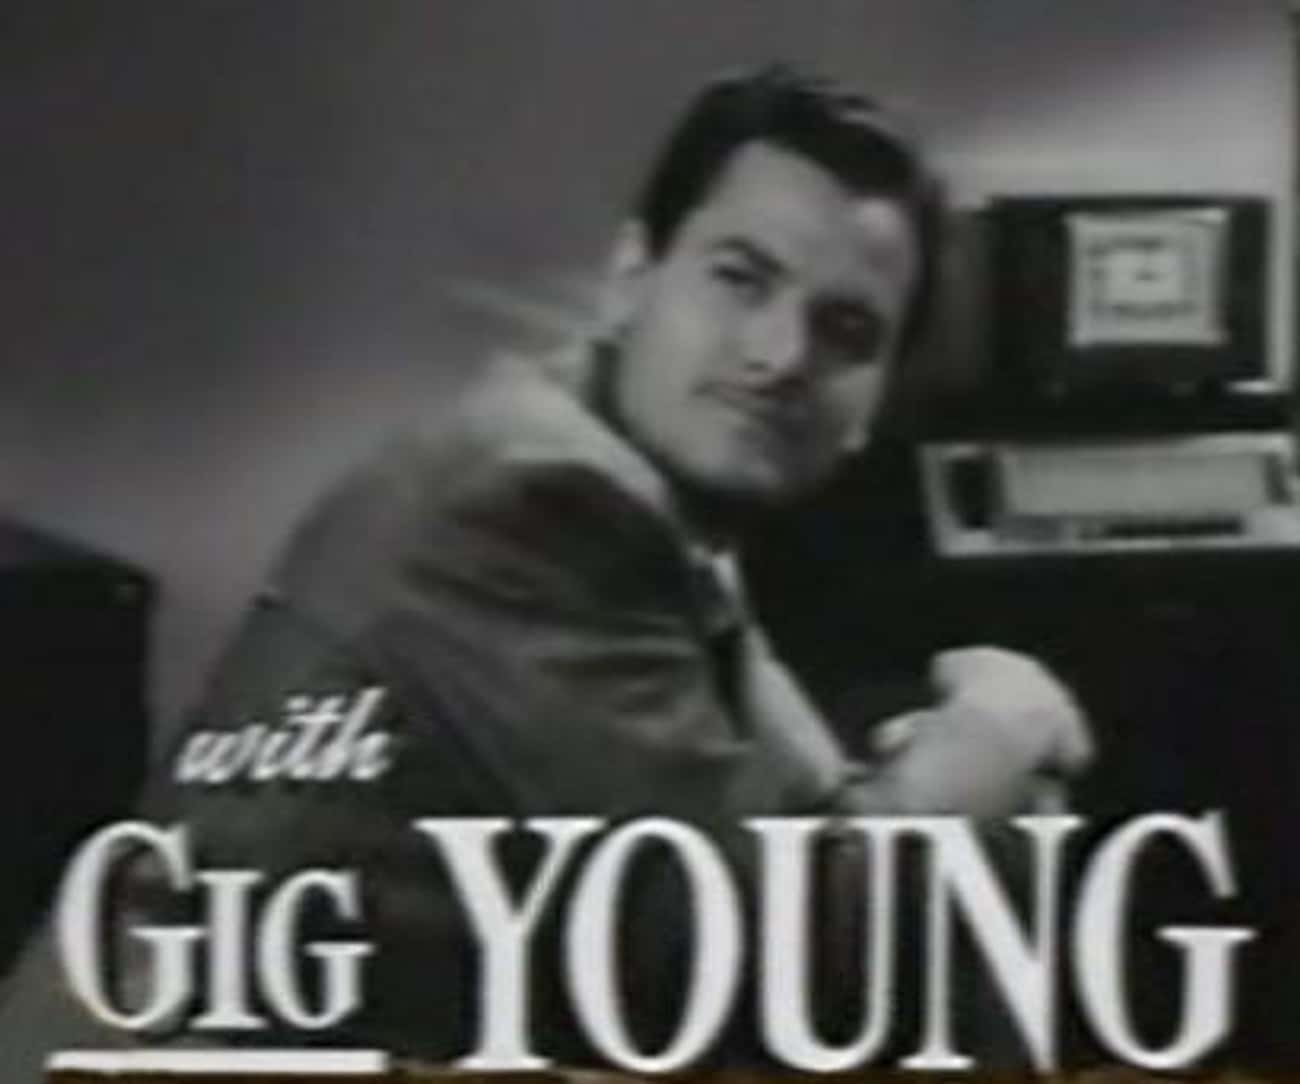 Gig Young